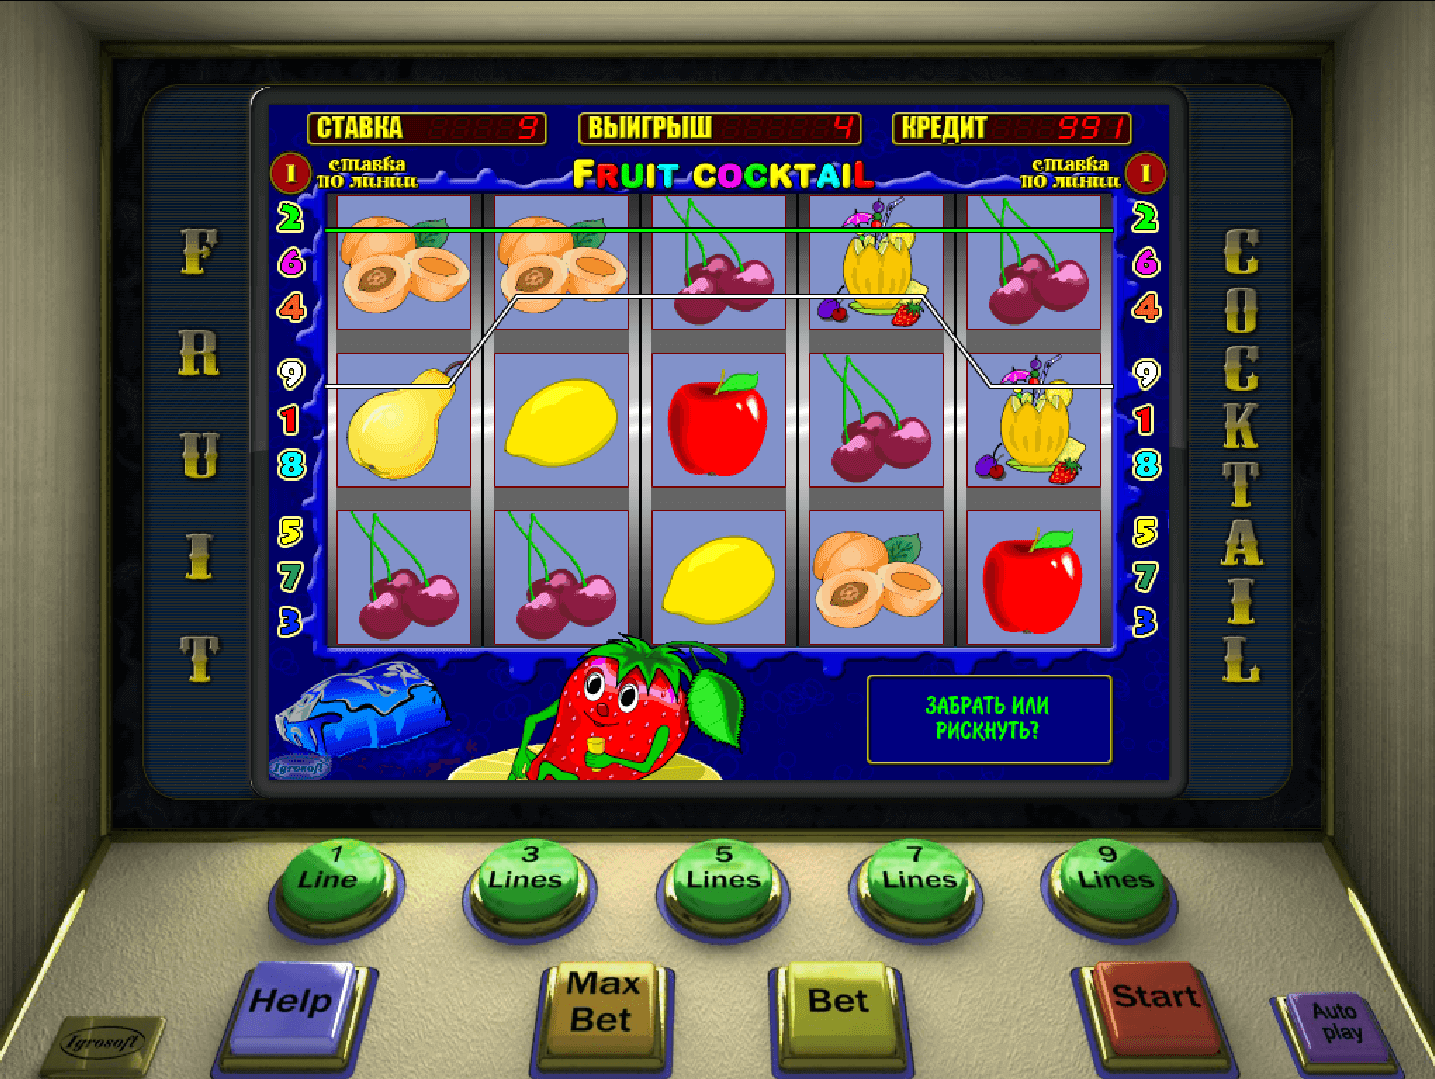 Скачать демо версии игровых аппаратов в казино играть онлайн игра рулетка